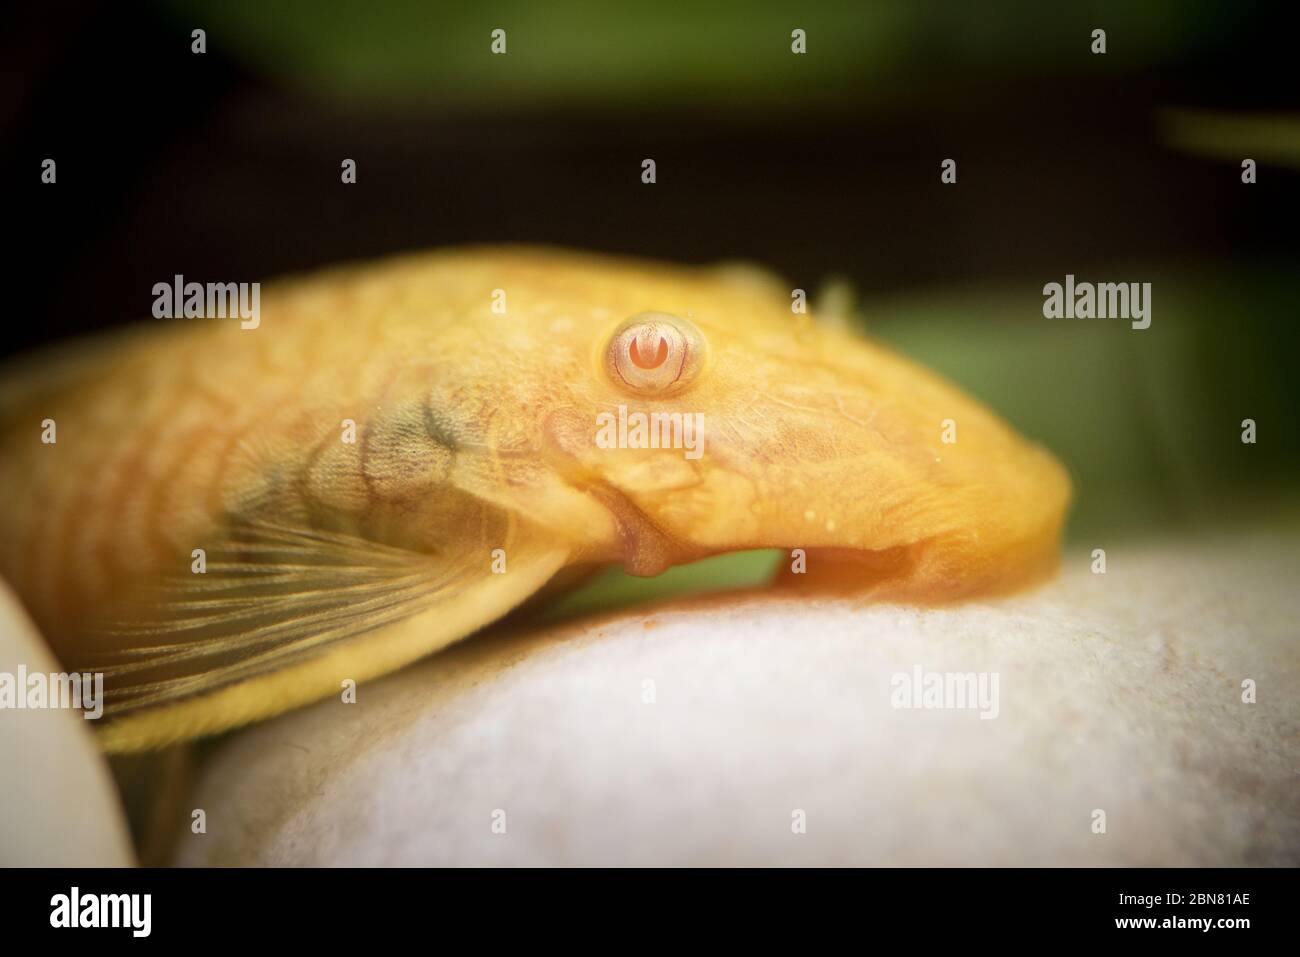 Golden Ancistrus pleco catfish Male albino Bristle-nose tropical freshwater aquarium fish Stock Photo